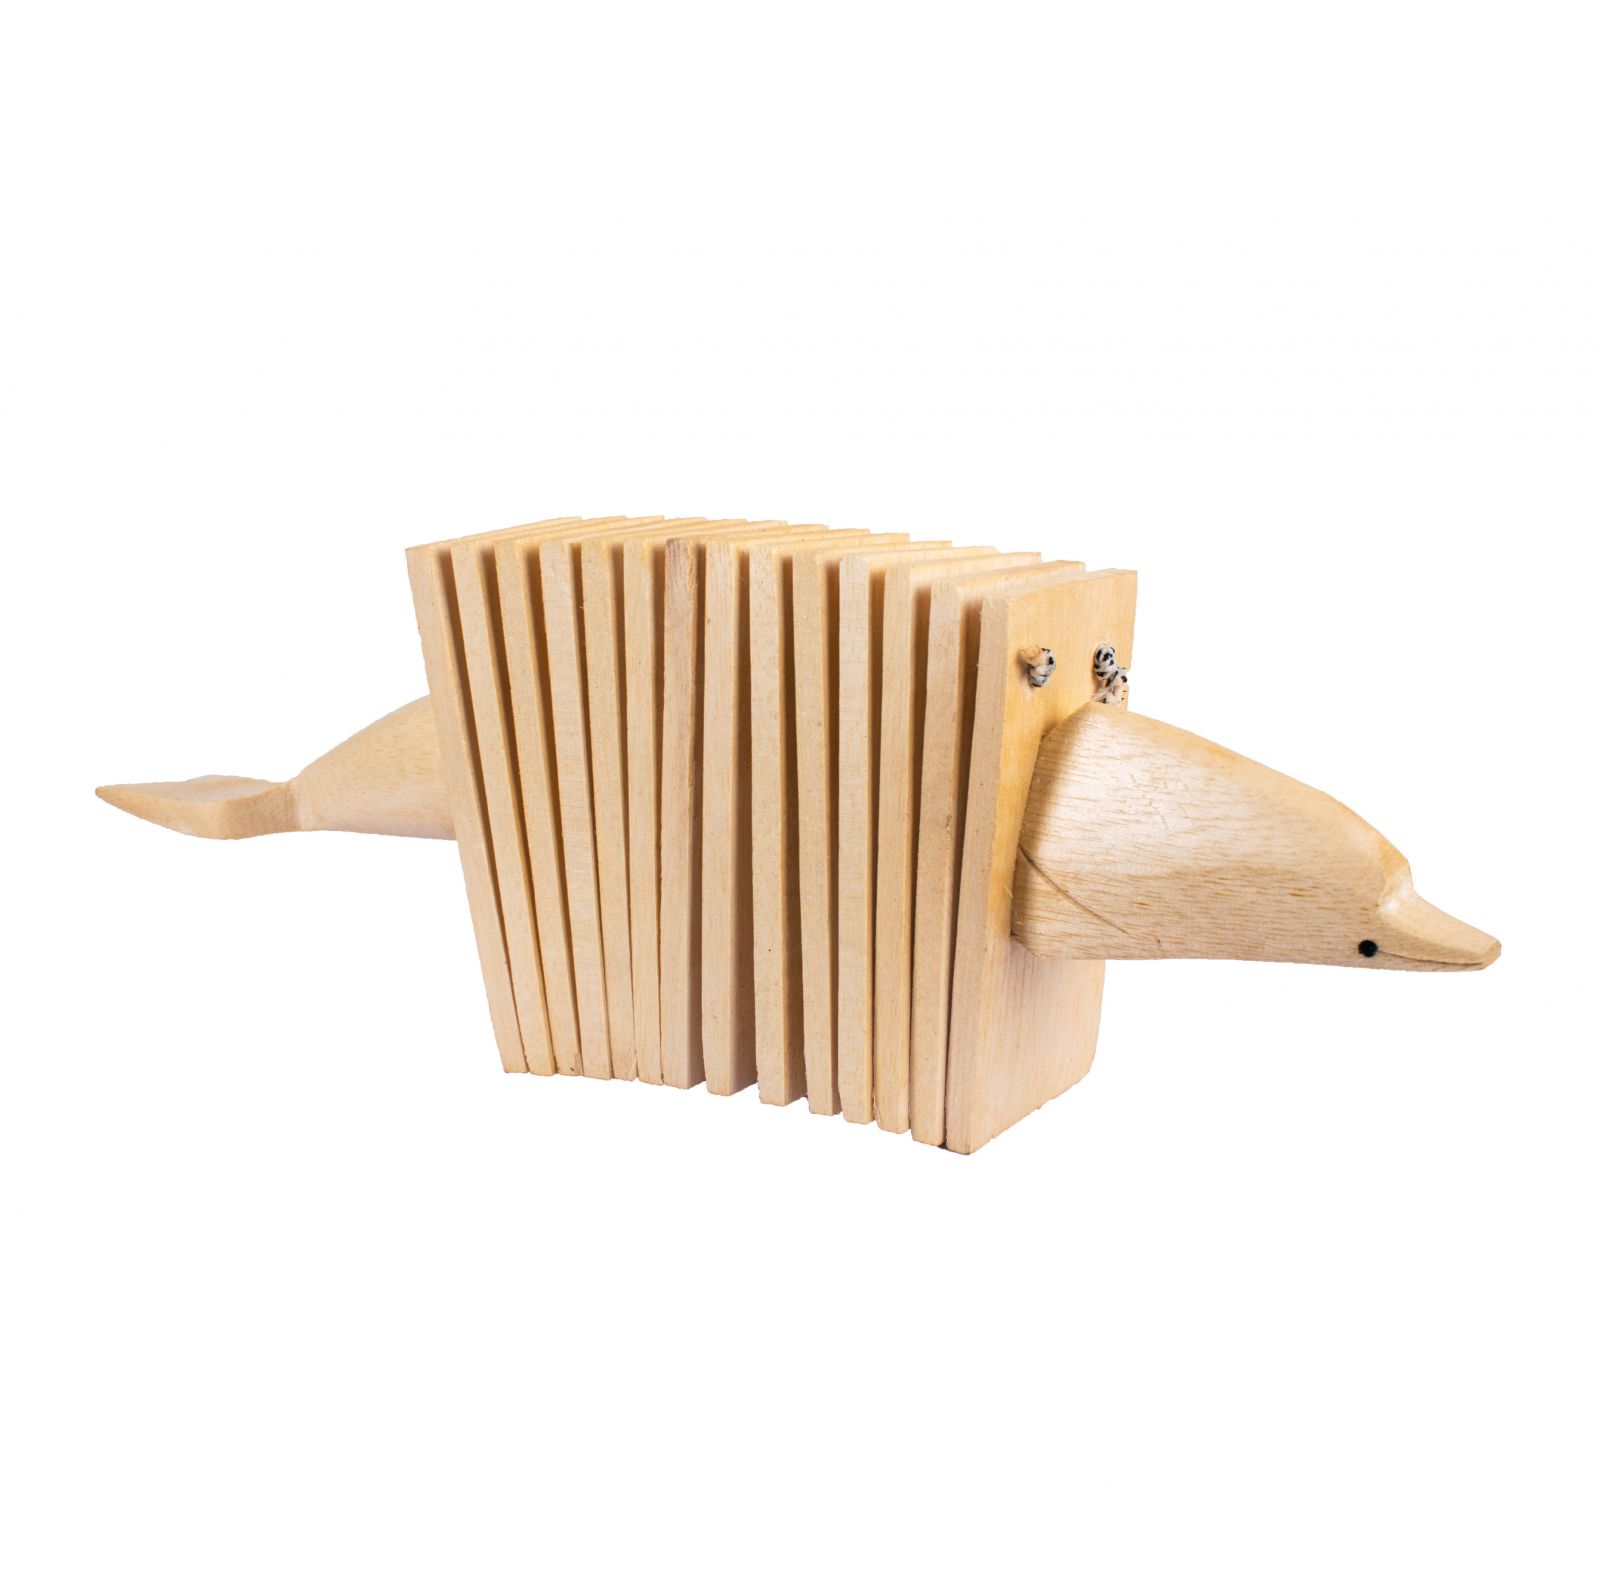 Sonaglio in legno a forma di fisarmonica - Delfino Indonesia